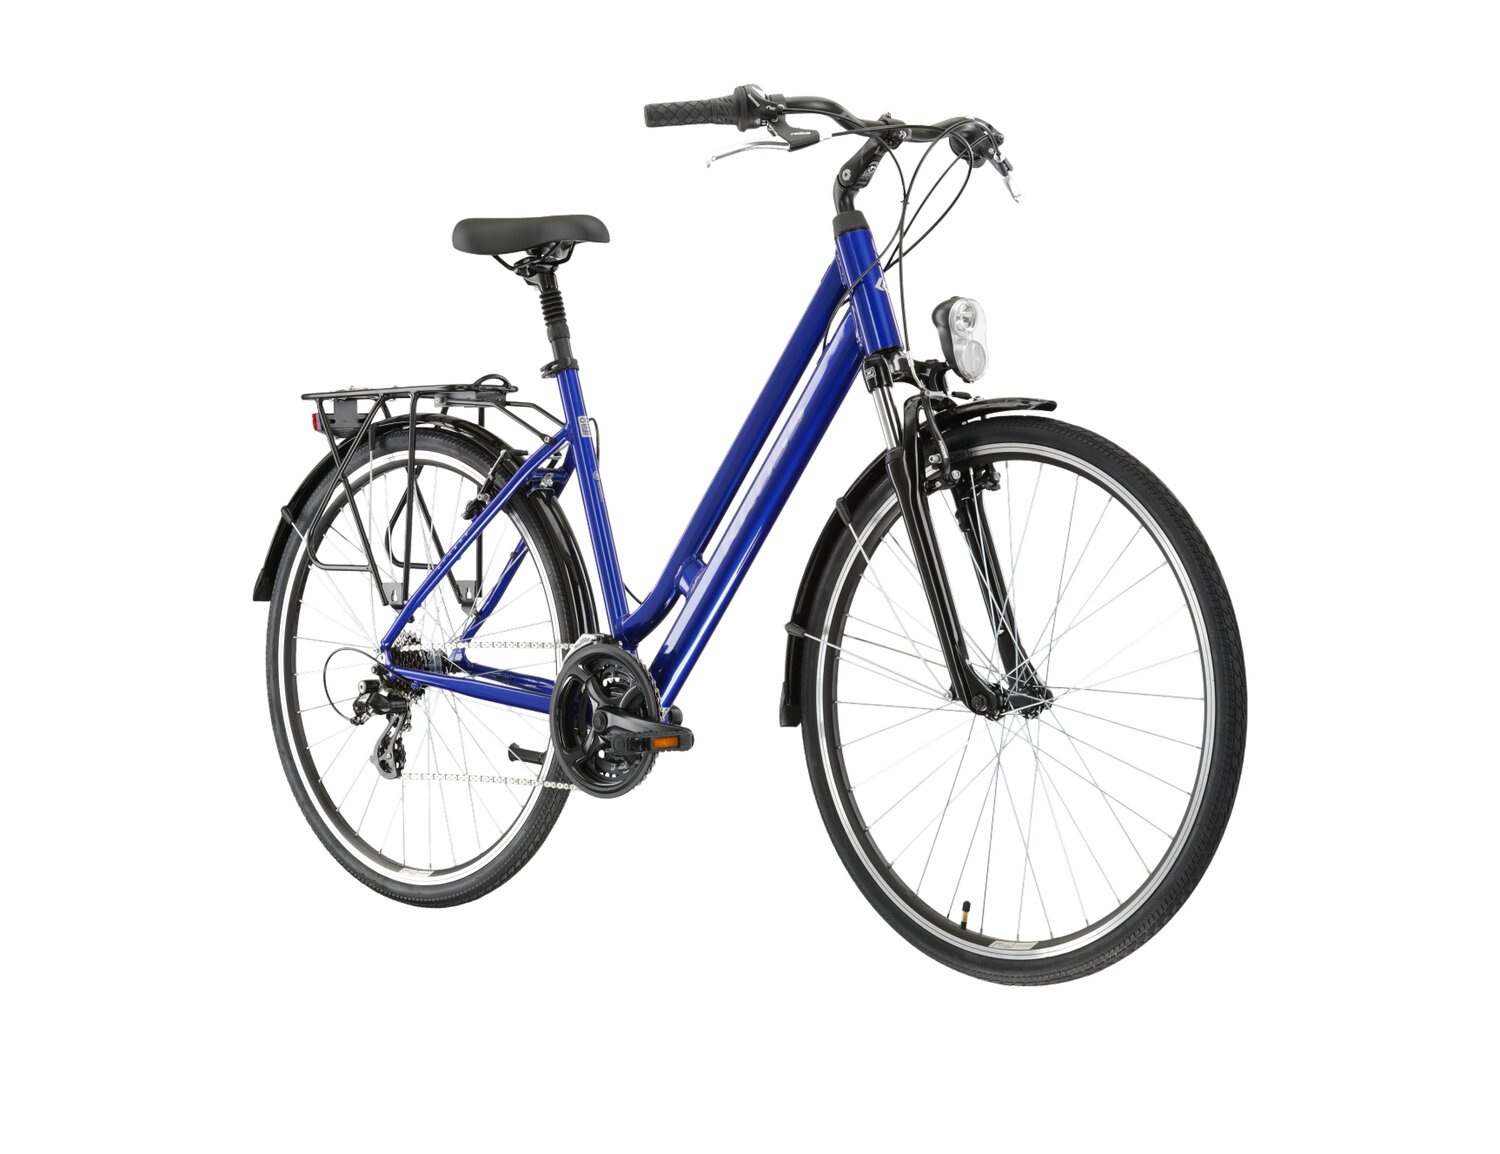  Rower miejski KROSS Sentio 2.0 na aluminiowej ramie w kolorze niebieskim wyposażony w osprzęt Shimano